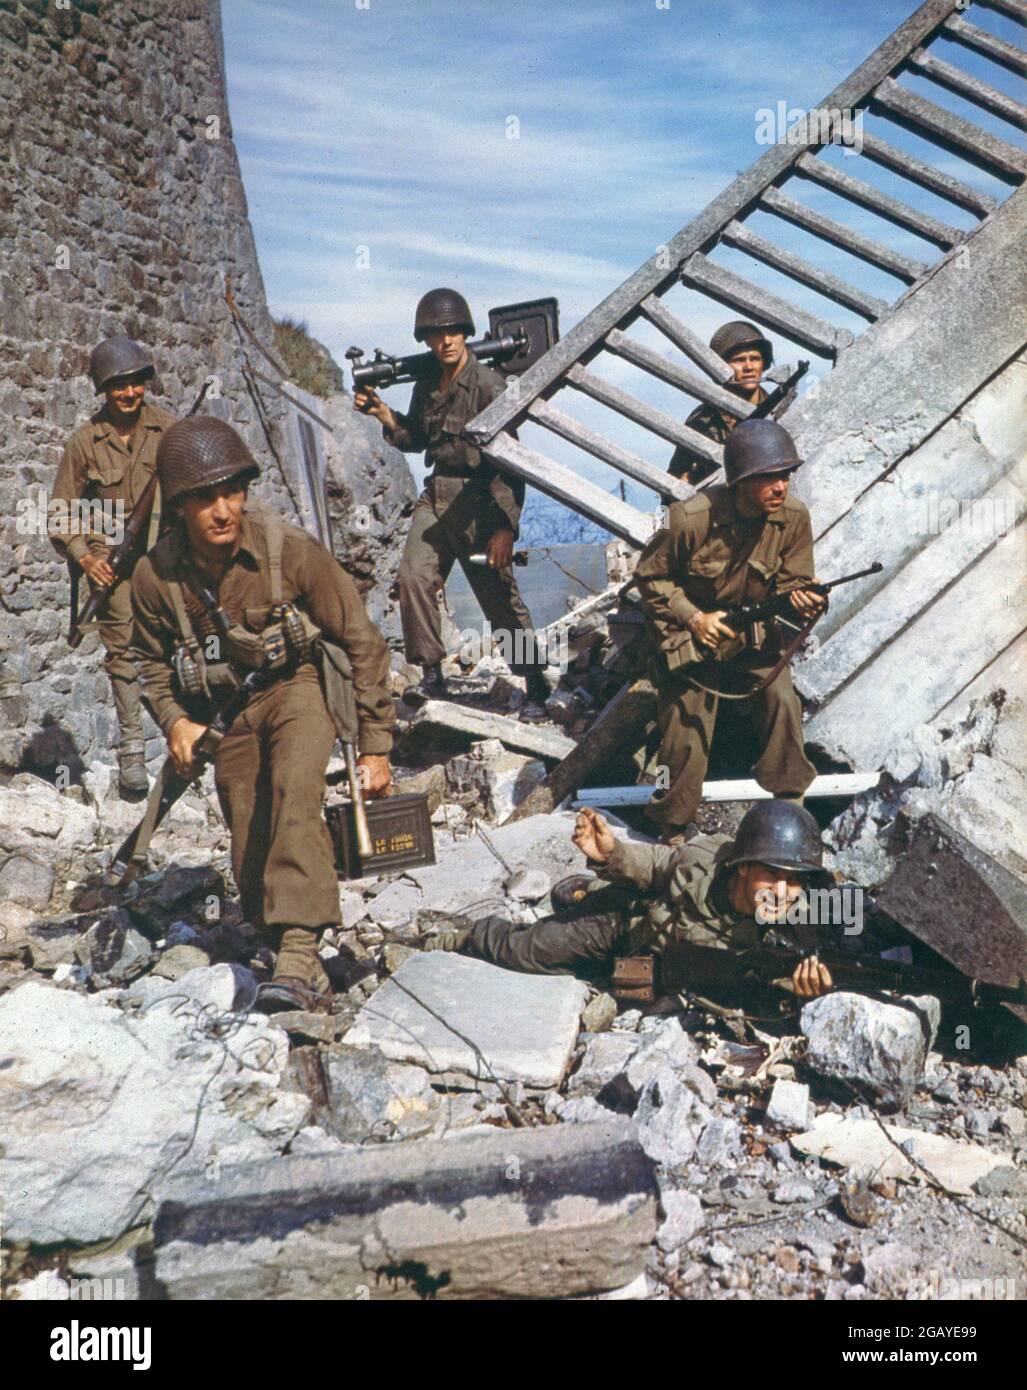 La deuxième Guerre mondiale la deuxième Guerre mondiale couleur couleur de la guerre mondiale les soldats américains dans le champ de bataille parmi les ruines Banque D'Images